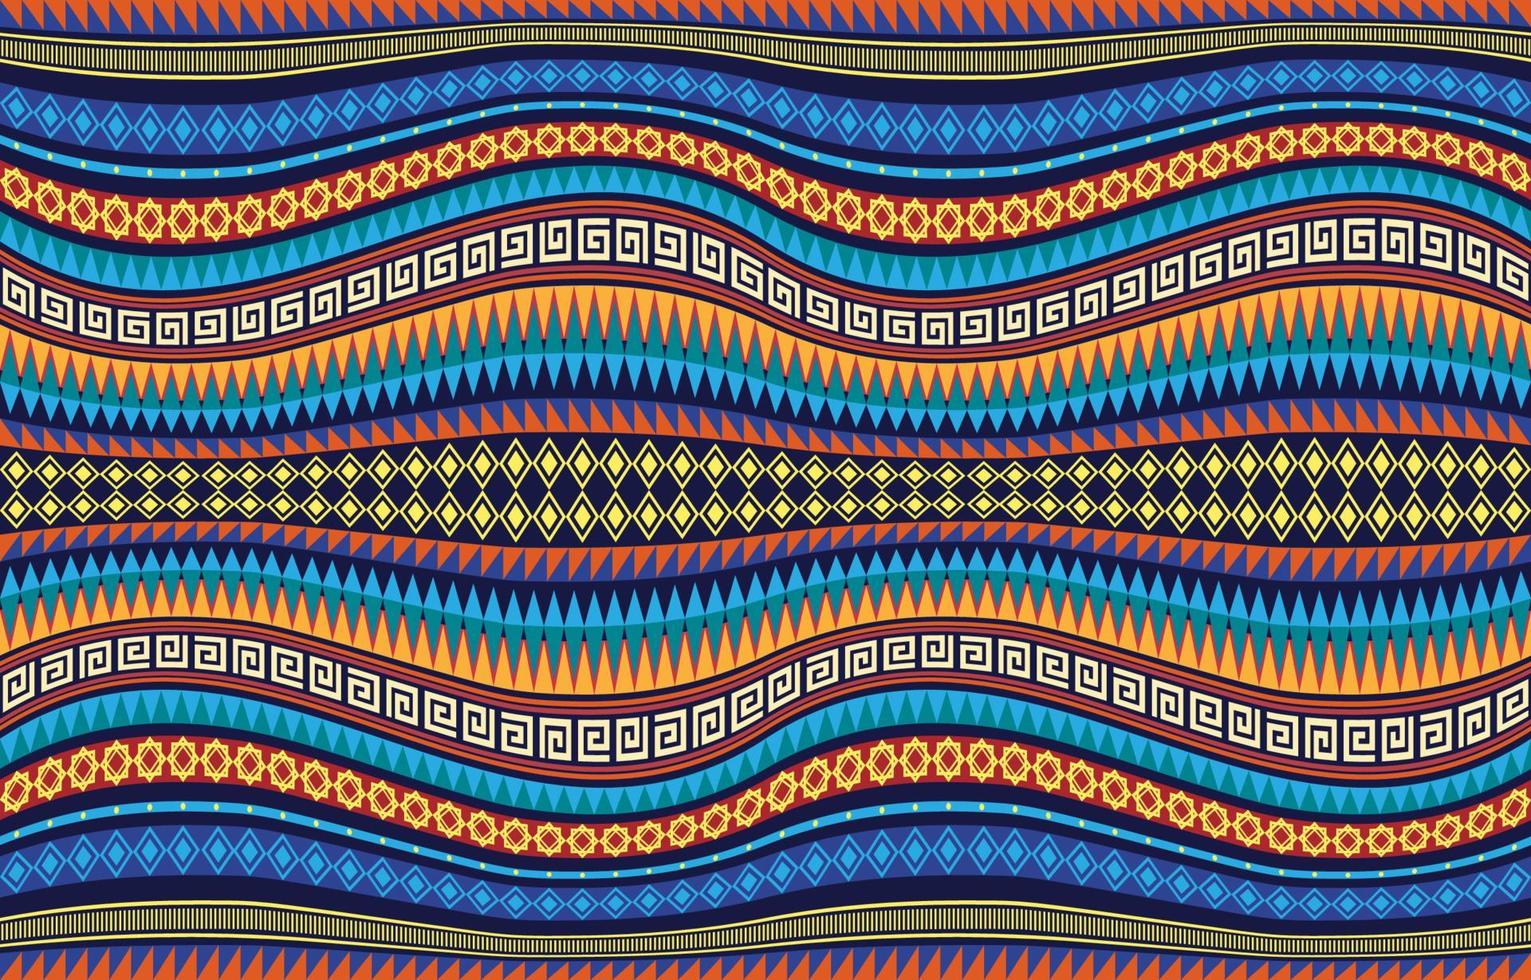 tessile modello ondulato diagonale curva strisce. etnico geometrico tribale nativo azteco arabesco tessuto tappeto indiano arabo africano senza soluzione di continuità modelli. ornato linea grafico ricamo stile. vettore